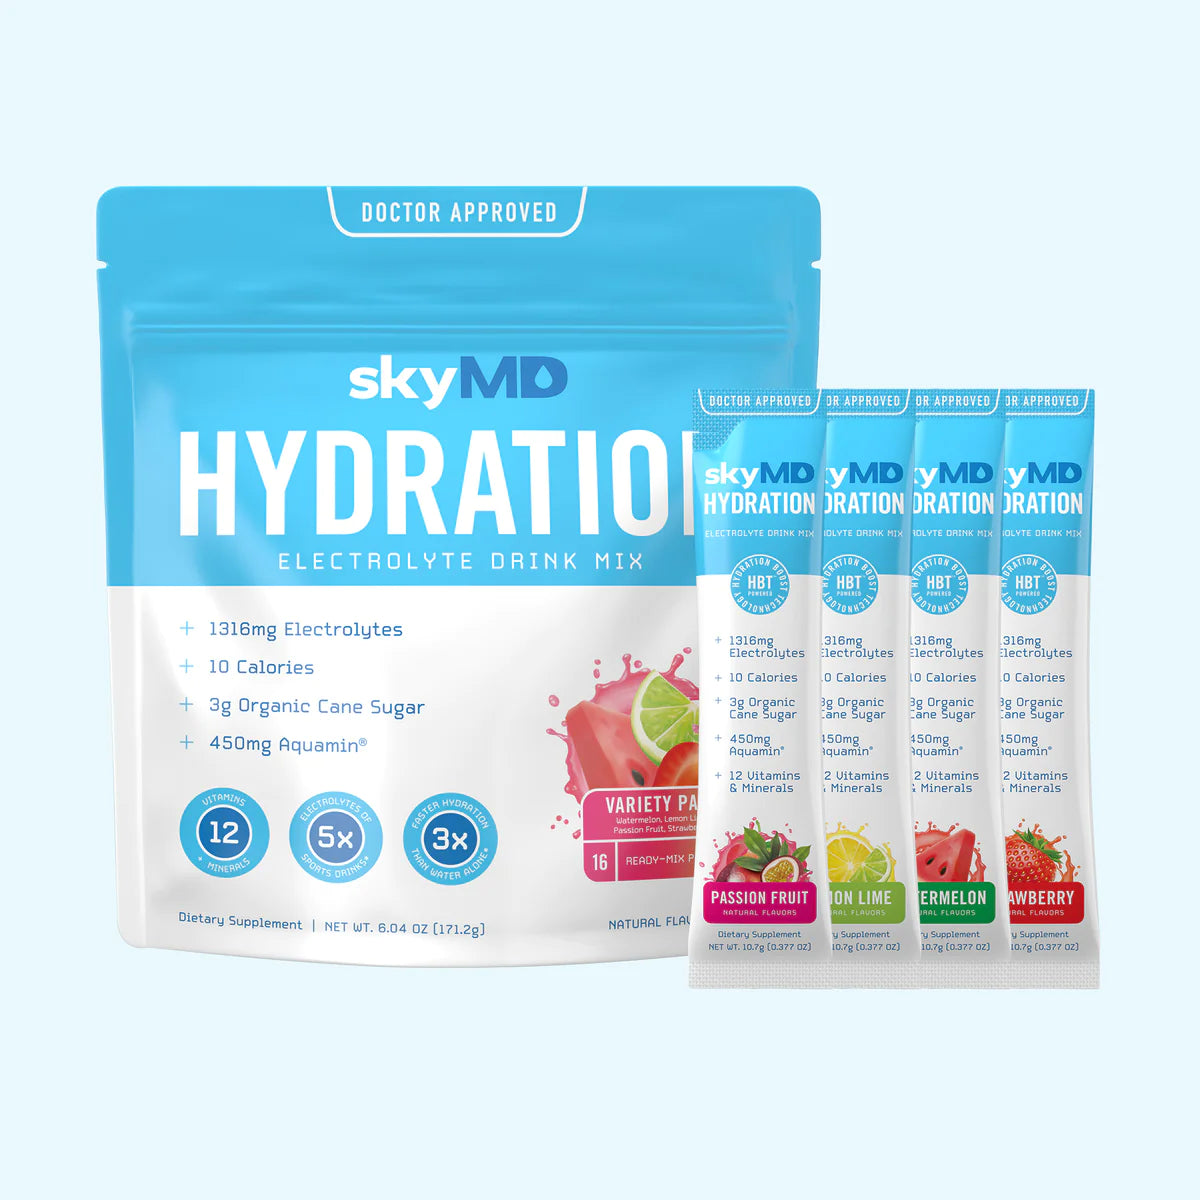 SkyMD-Hydration-Variety.webp